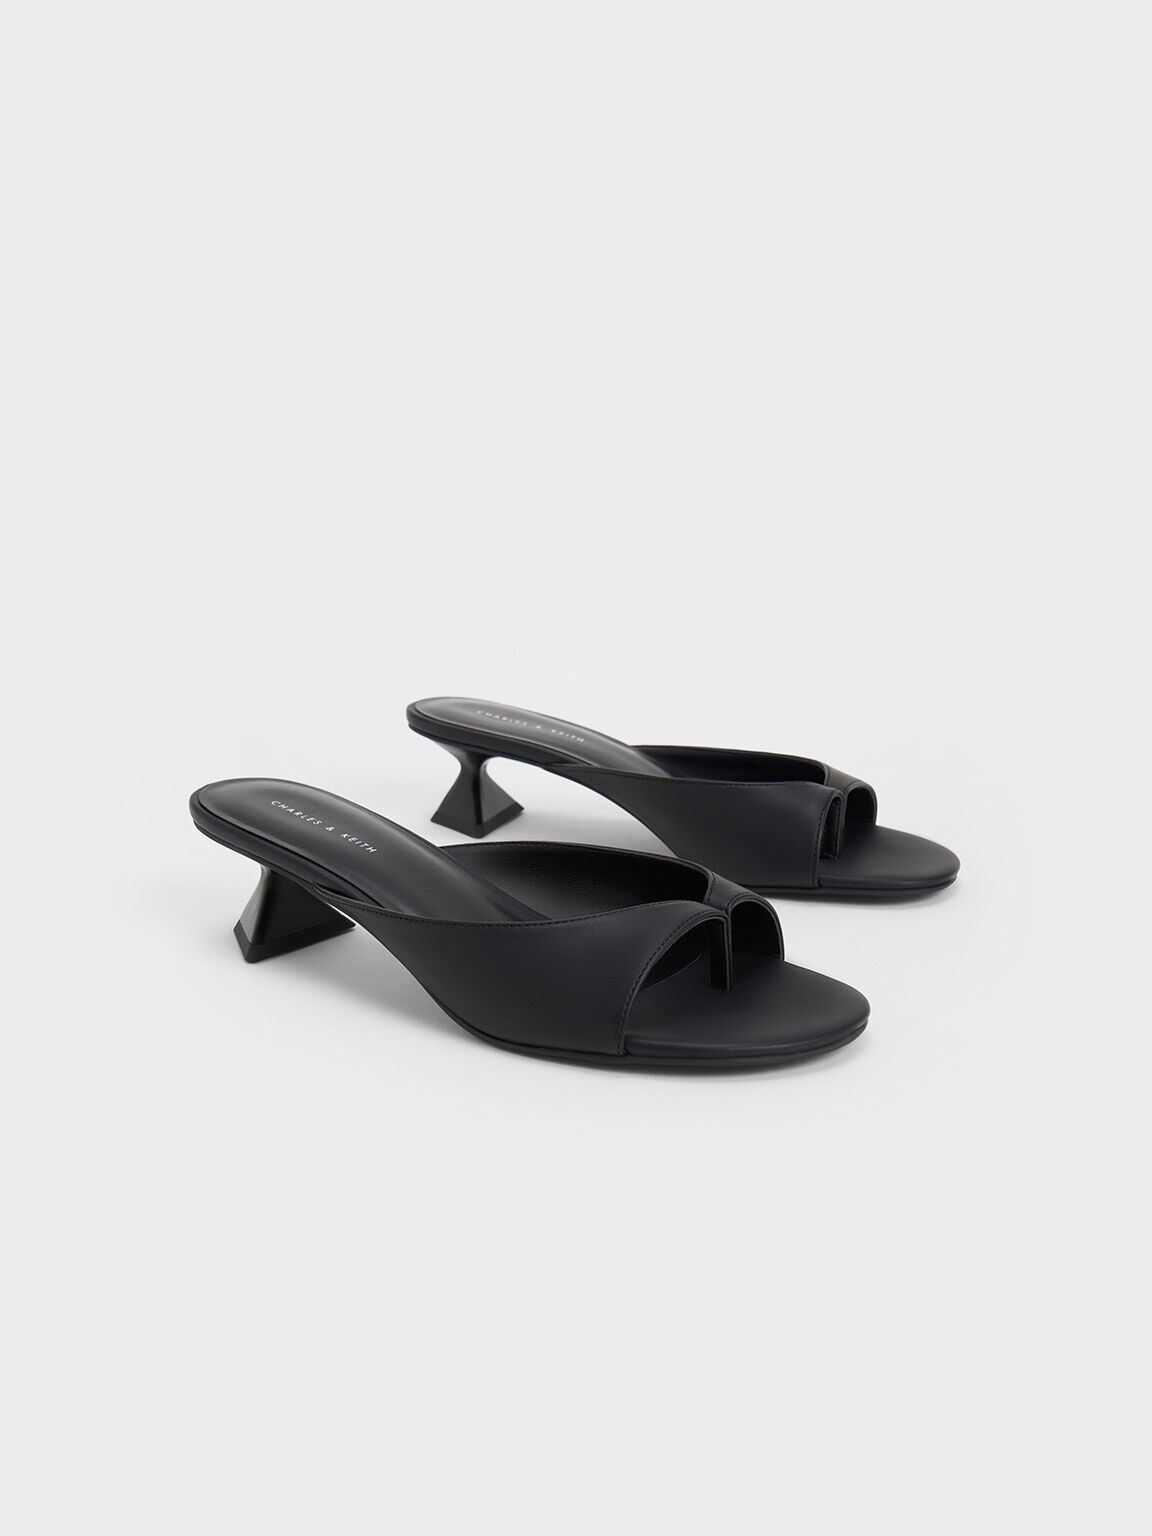 Sculptural Heel Thong Sandals, Black, hi-res